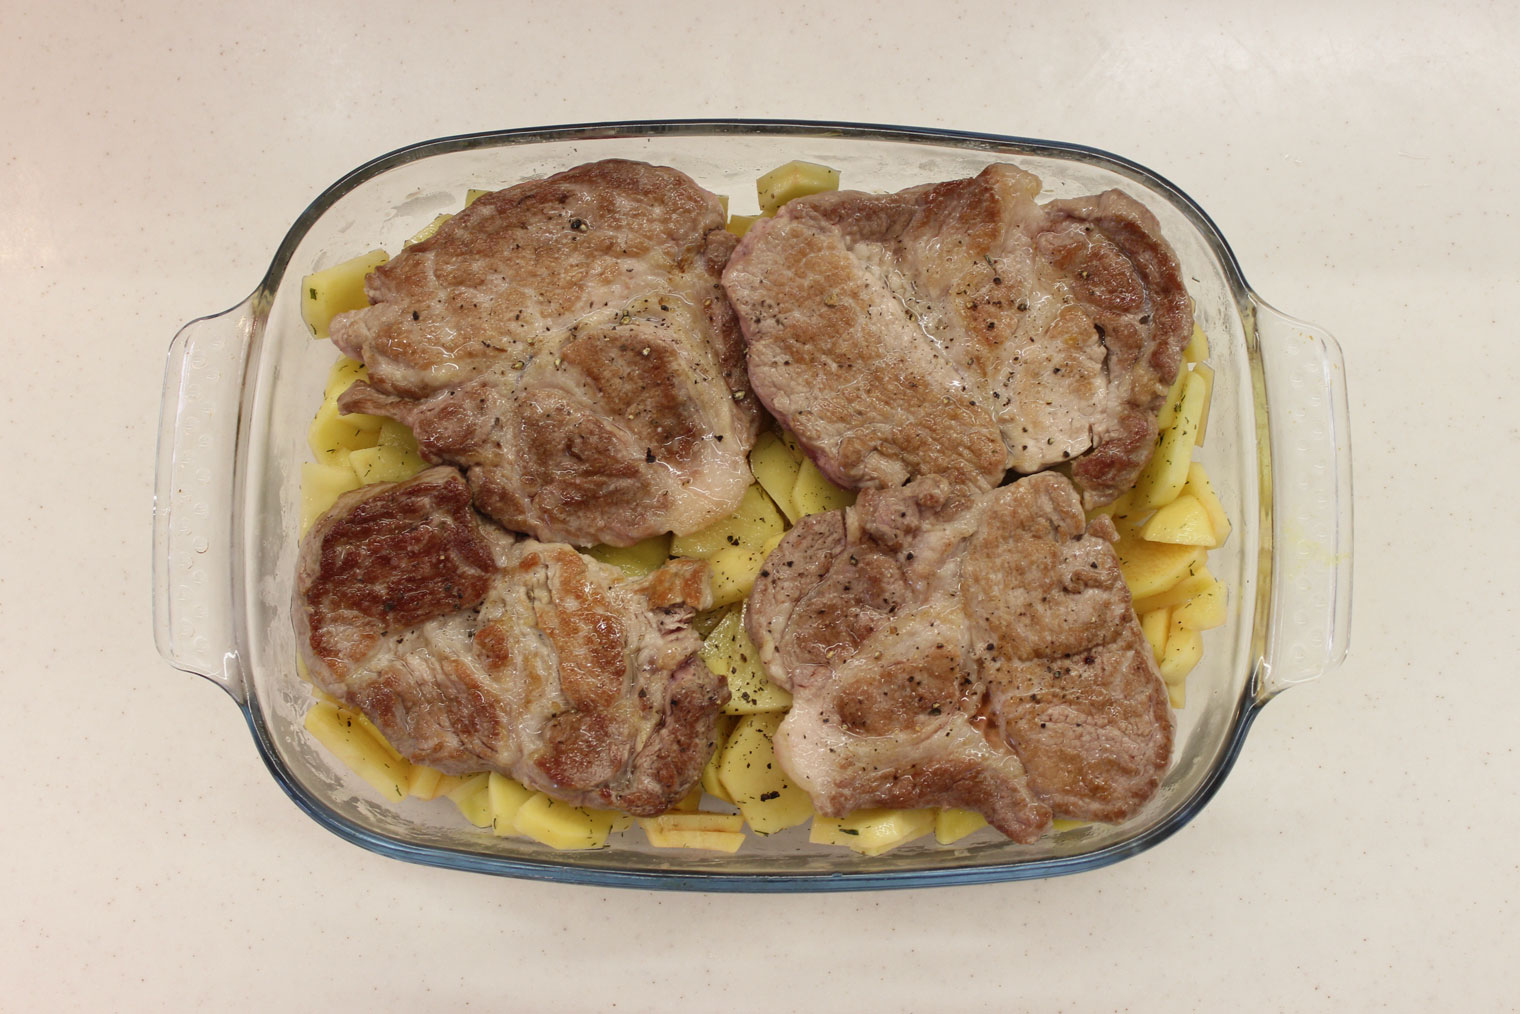 Картошка с мясом (99 рецептов с фото) - рецепты с фотографиями на Поварёростовсэс.рф